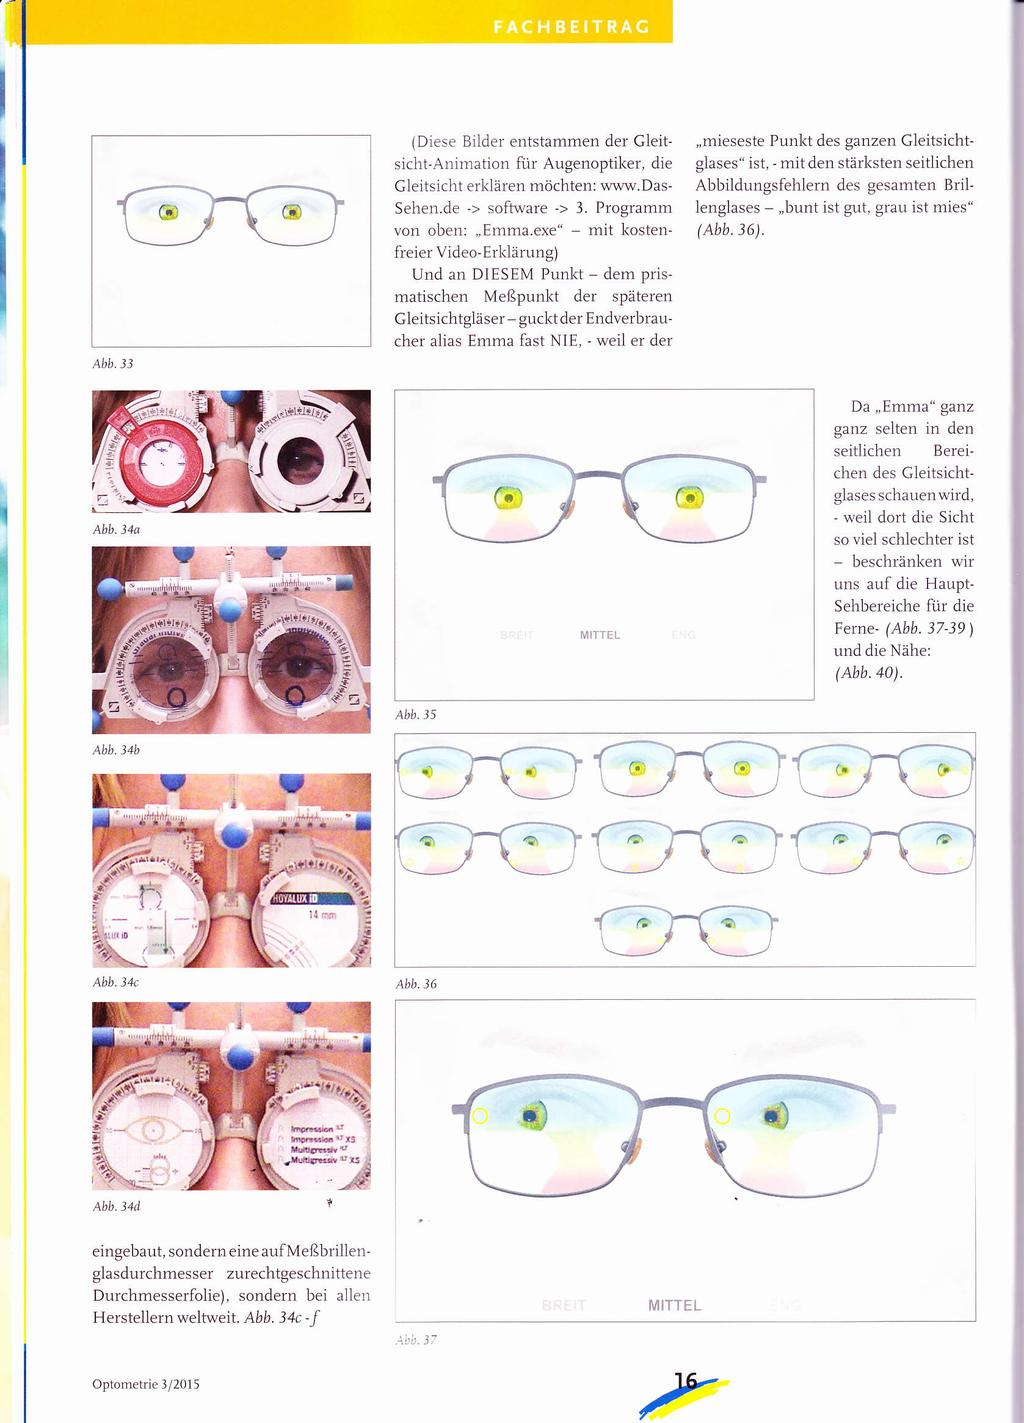 Abb.33 (Diese Bilder entstammen der Gleitsicht-Animation für Augenoptiker, die Gleitsicht erldären möchten: www.das- Sehen.de -> software -> 3. Programm von oben:,,emma.